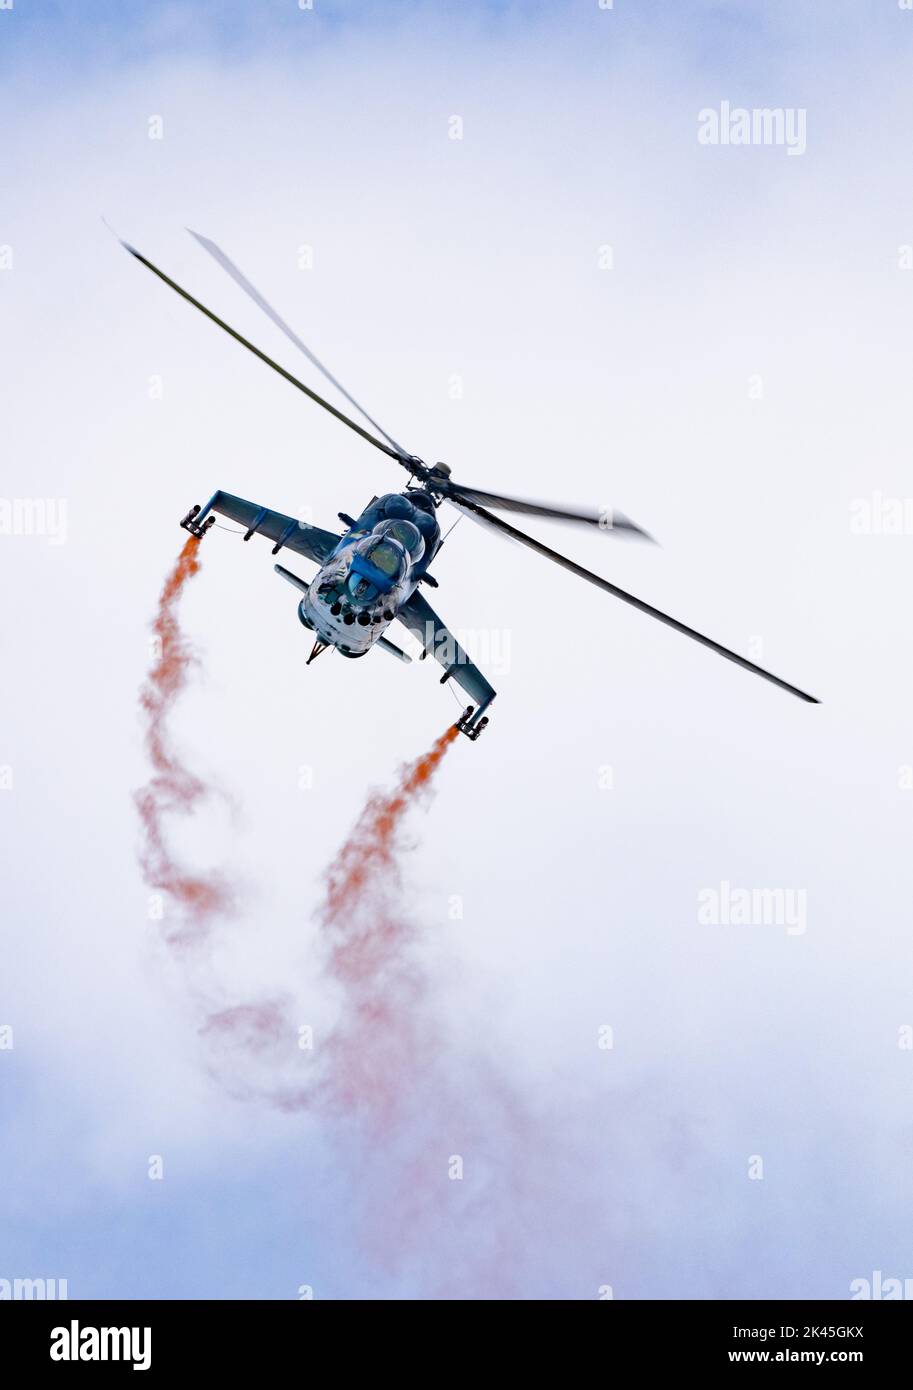 Airshow UK; un hélicoptère militaire; le Mil mi 24V/35 Hind, russe a fait l'hélicoptère d'attaque exposé; l'Imperial War Museum Duxford UK airshow Banque D'Images